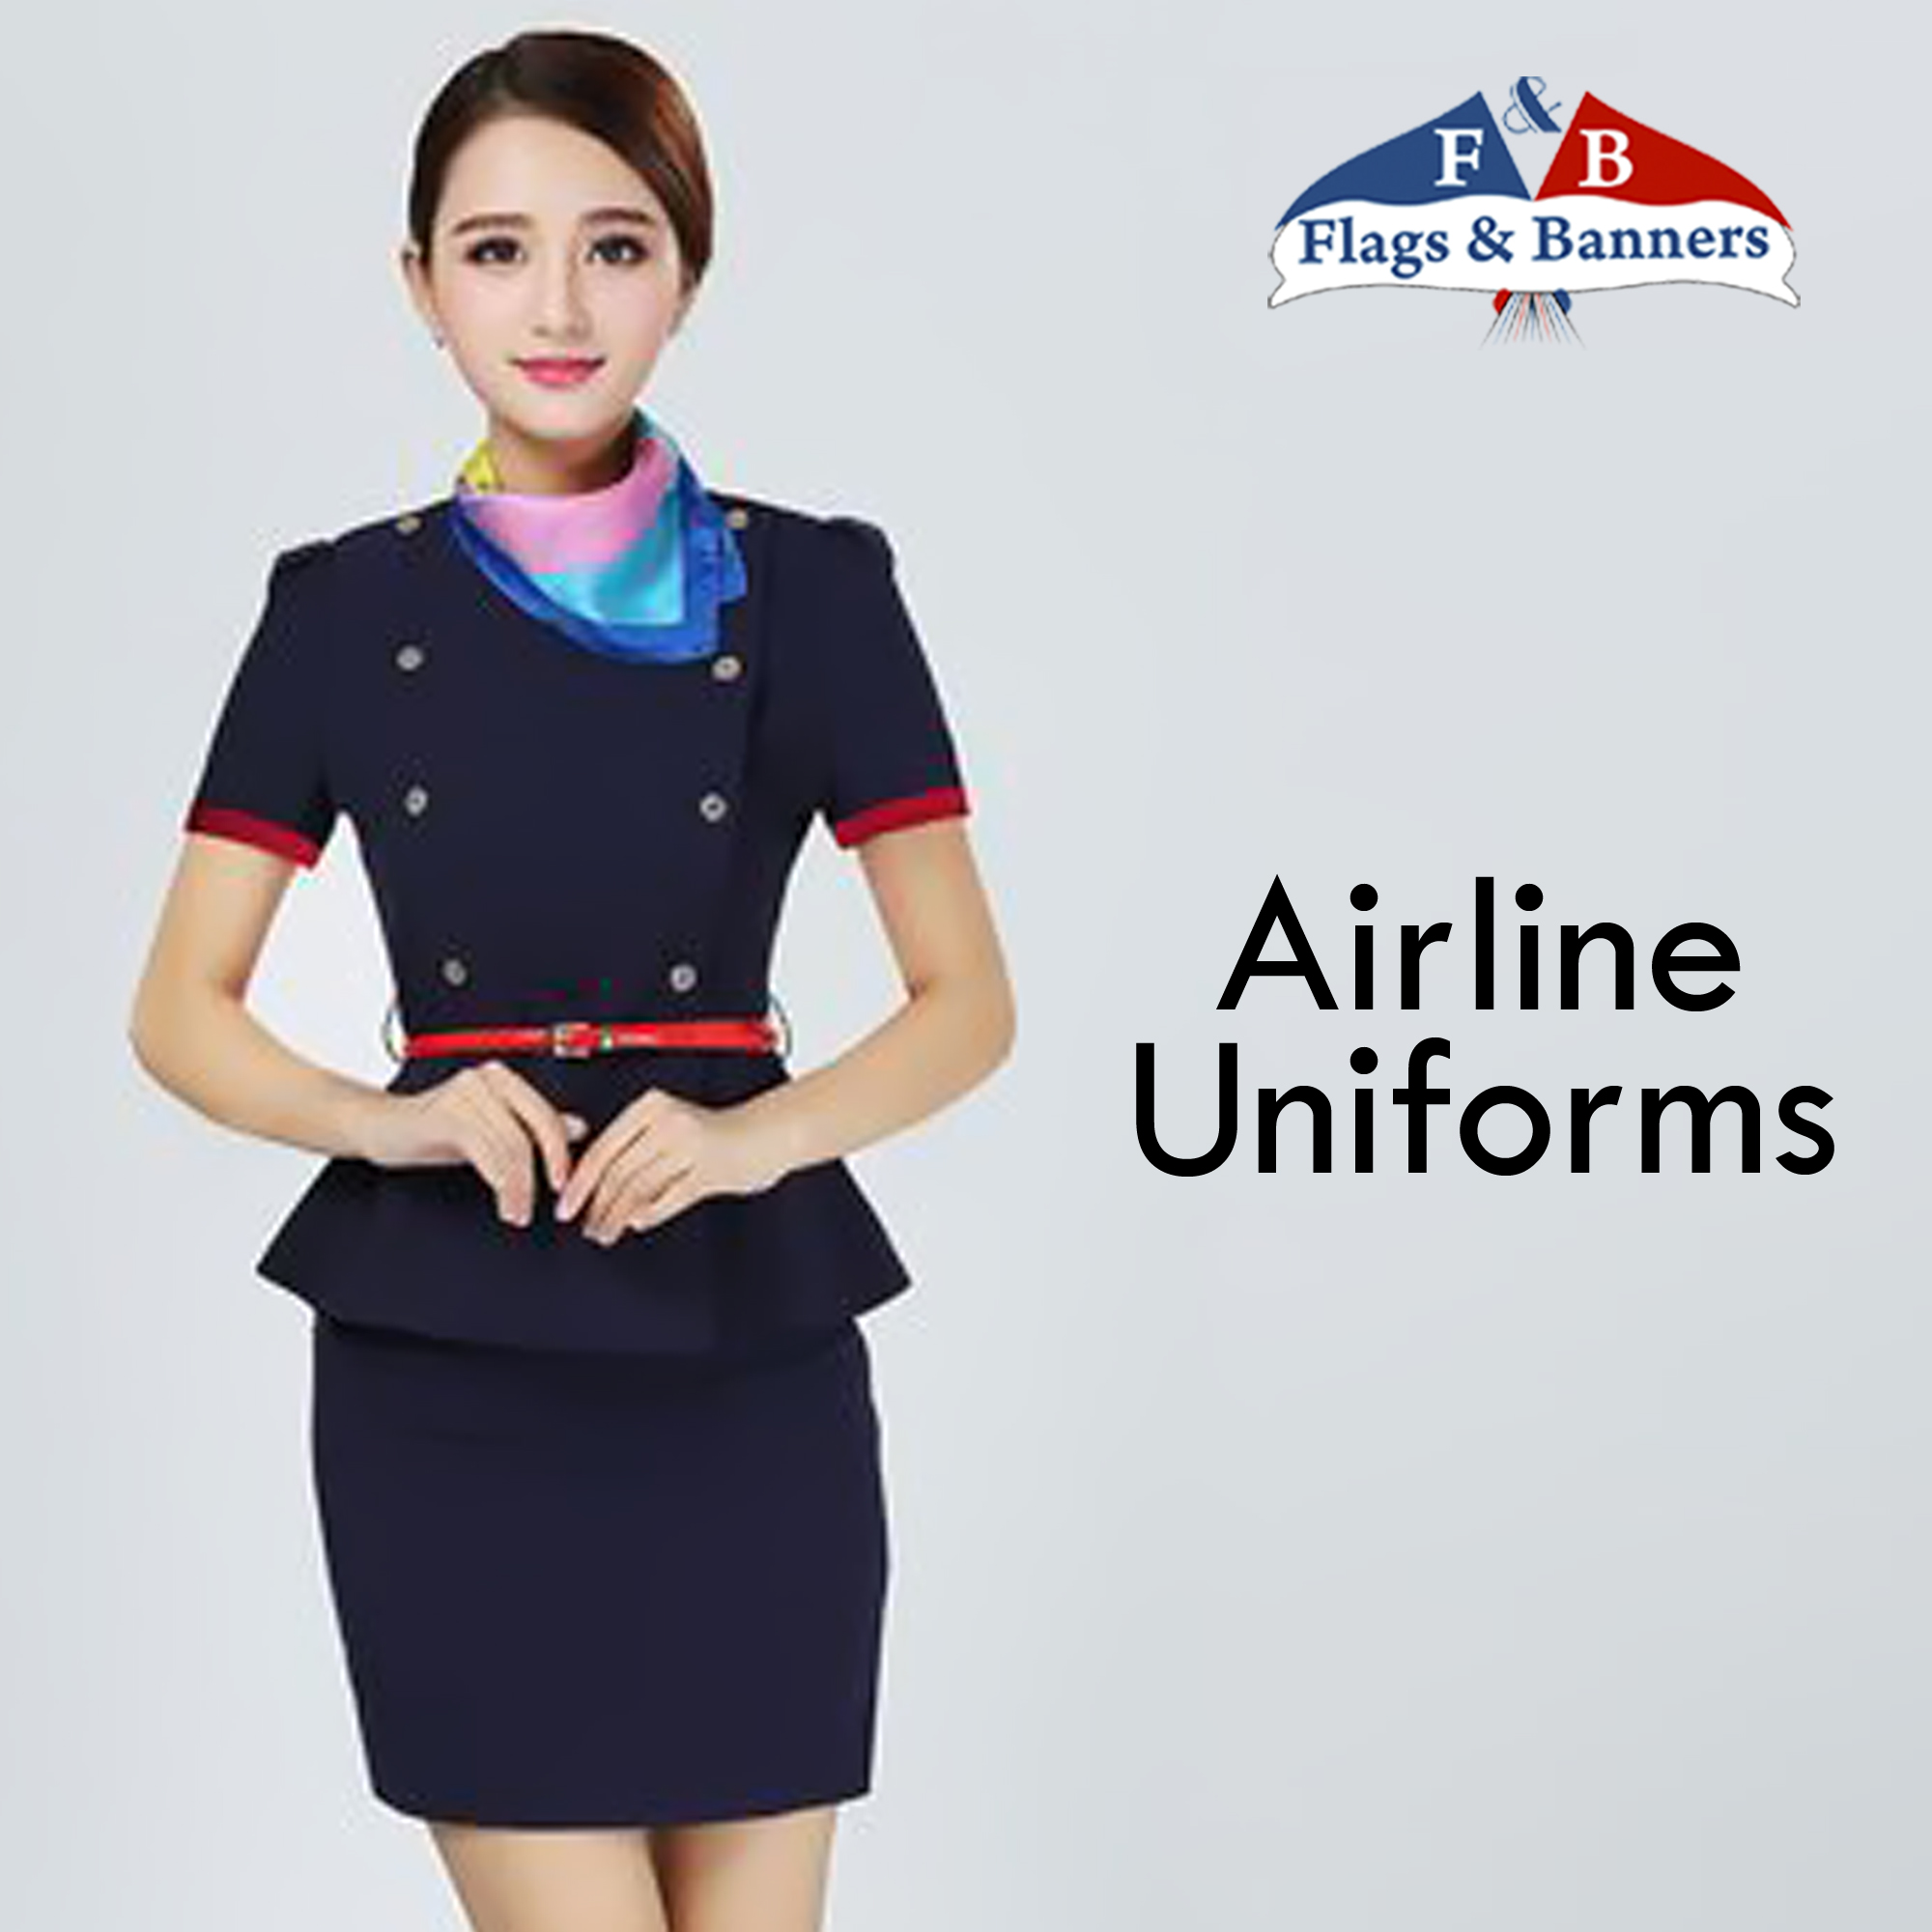 Airline Uniforms 08